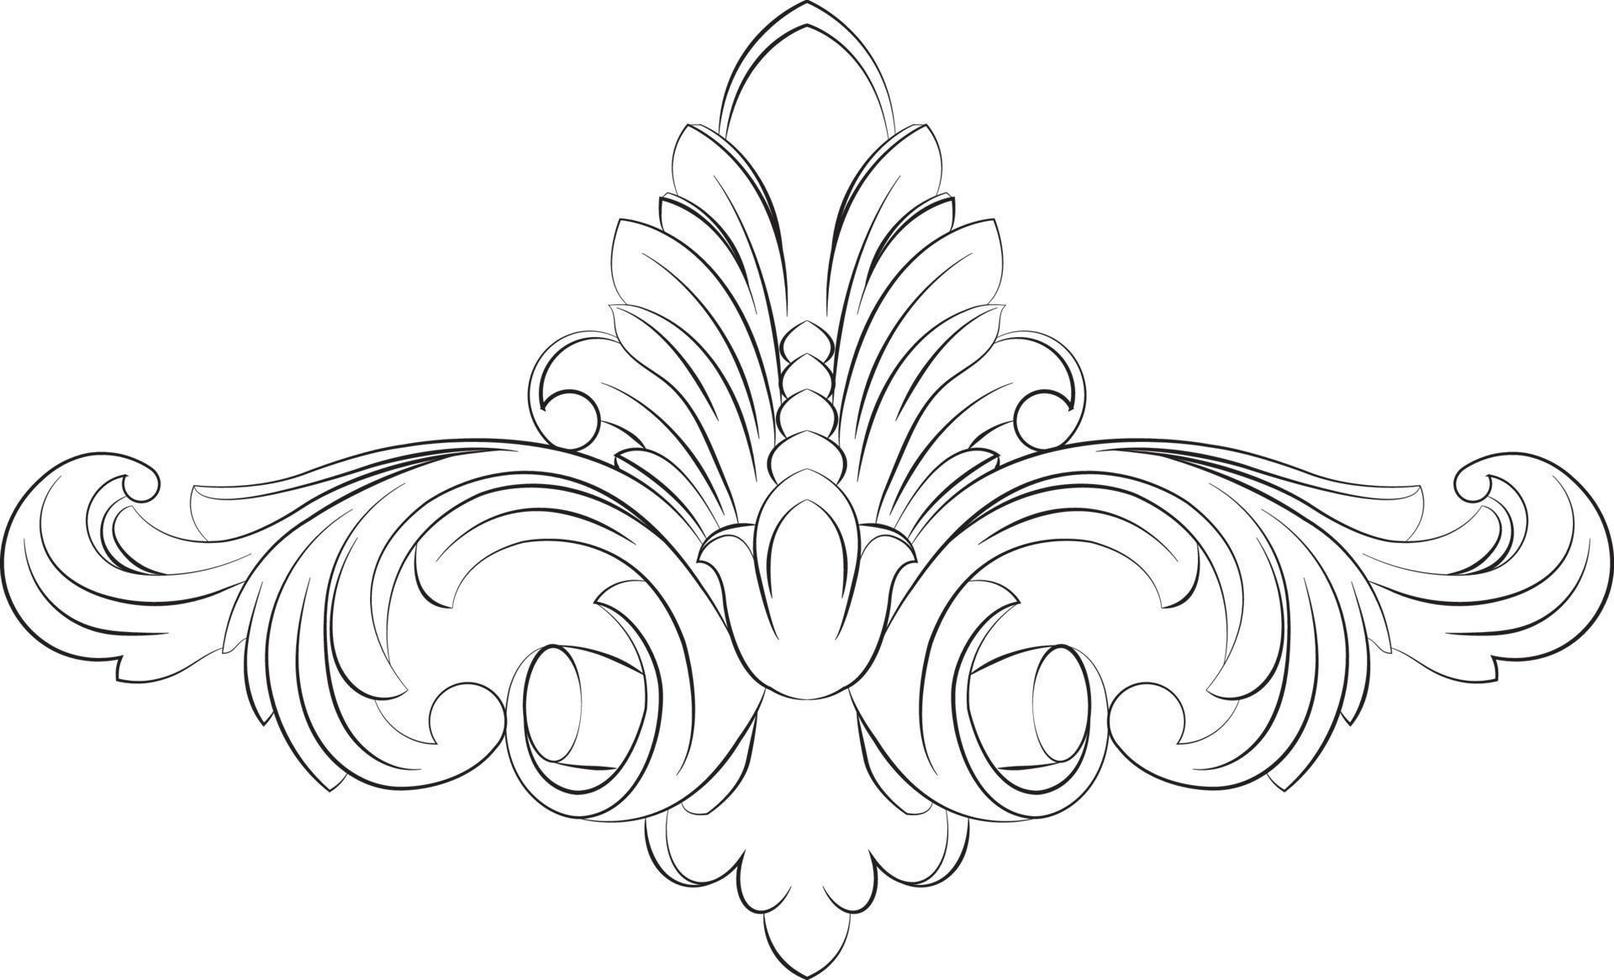 vintage barroco victoriana marco orla floral ornamento hojas rollo grabado retro flor modelo decorativo diseño tatuaje blanco y negro japonés filigrana caligráfico vector heráldico remolinos